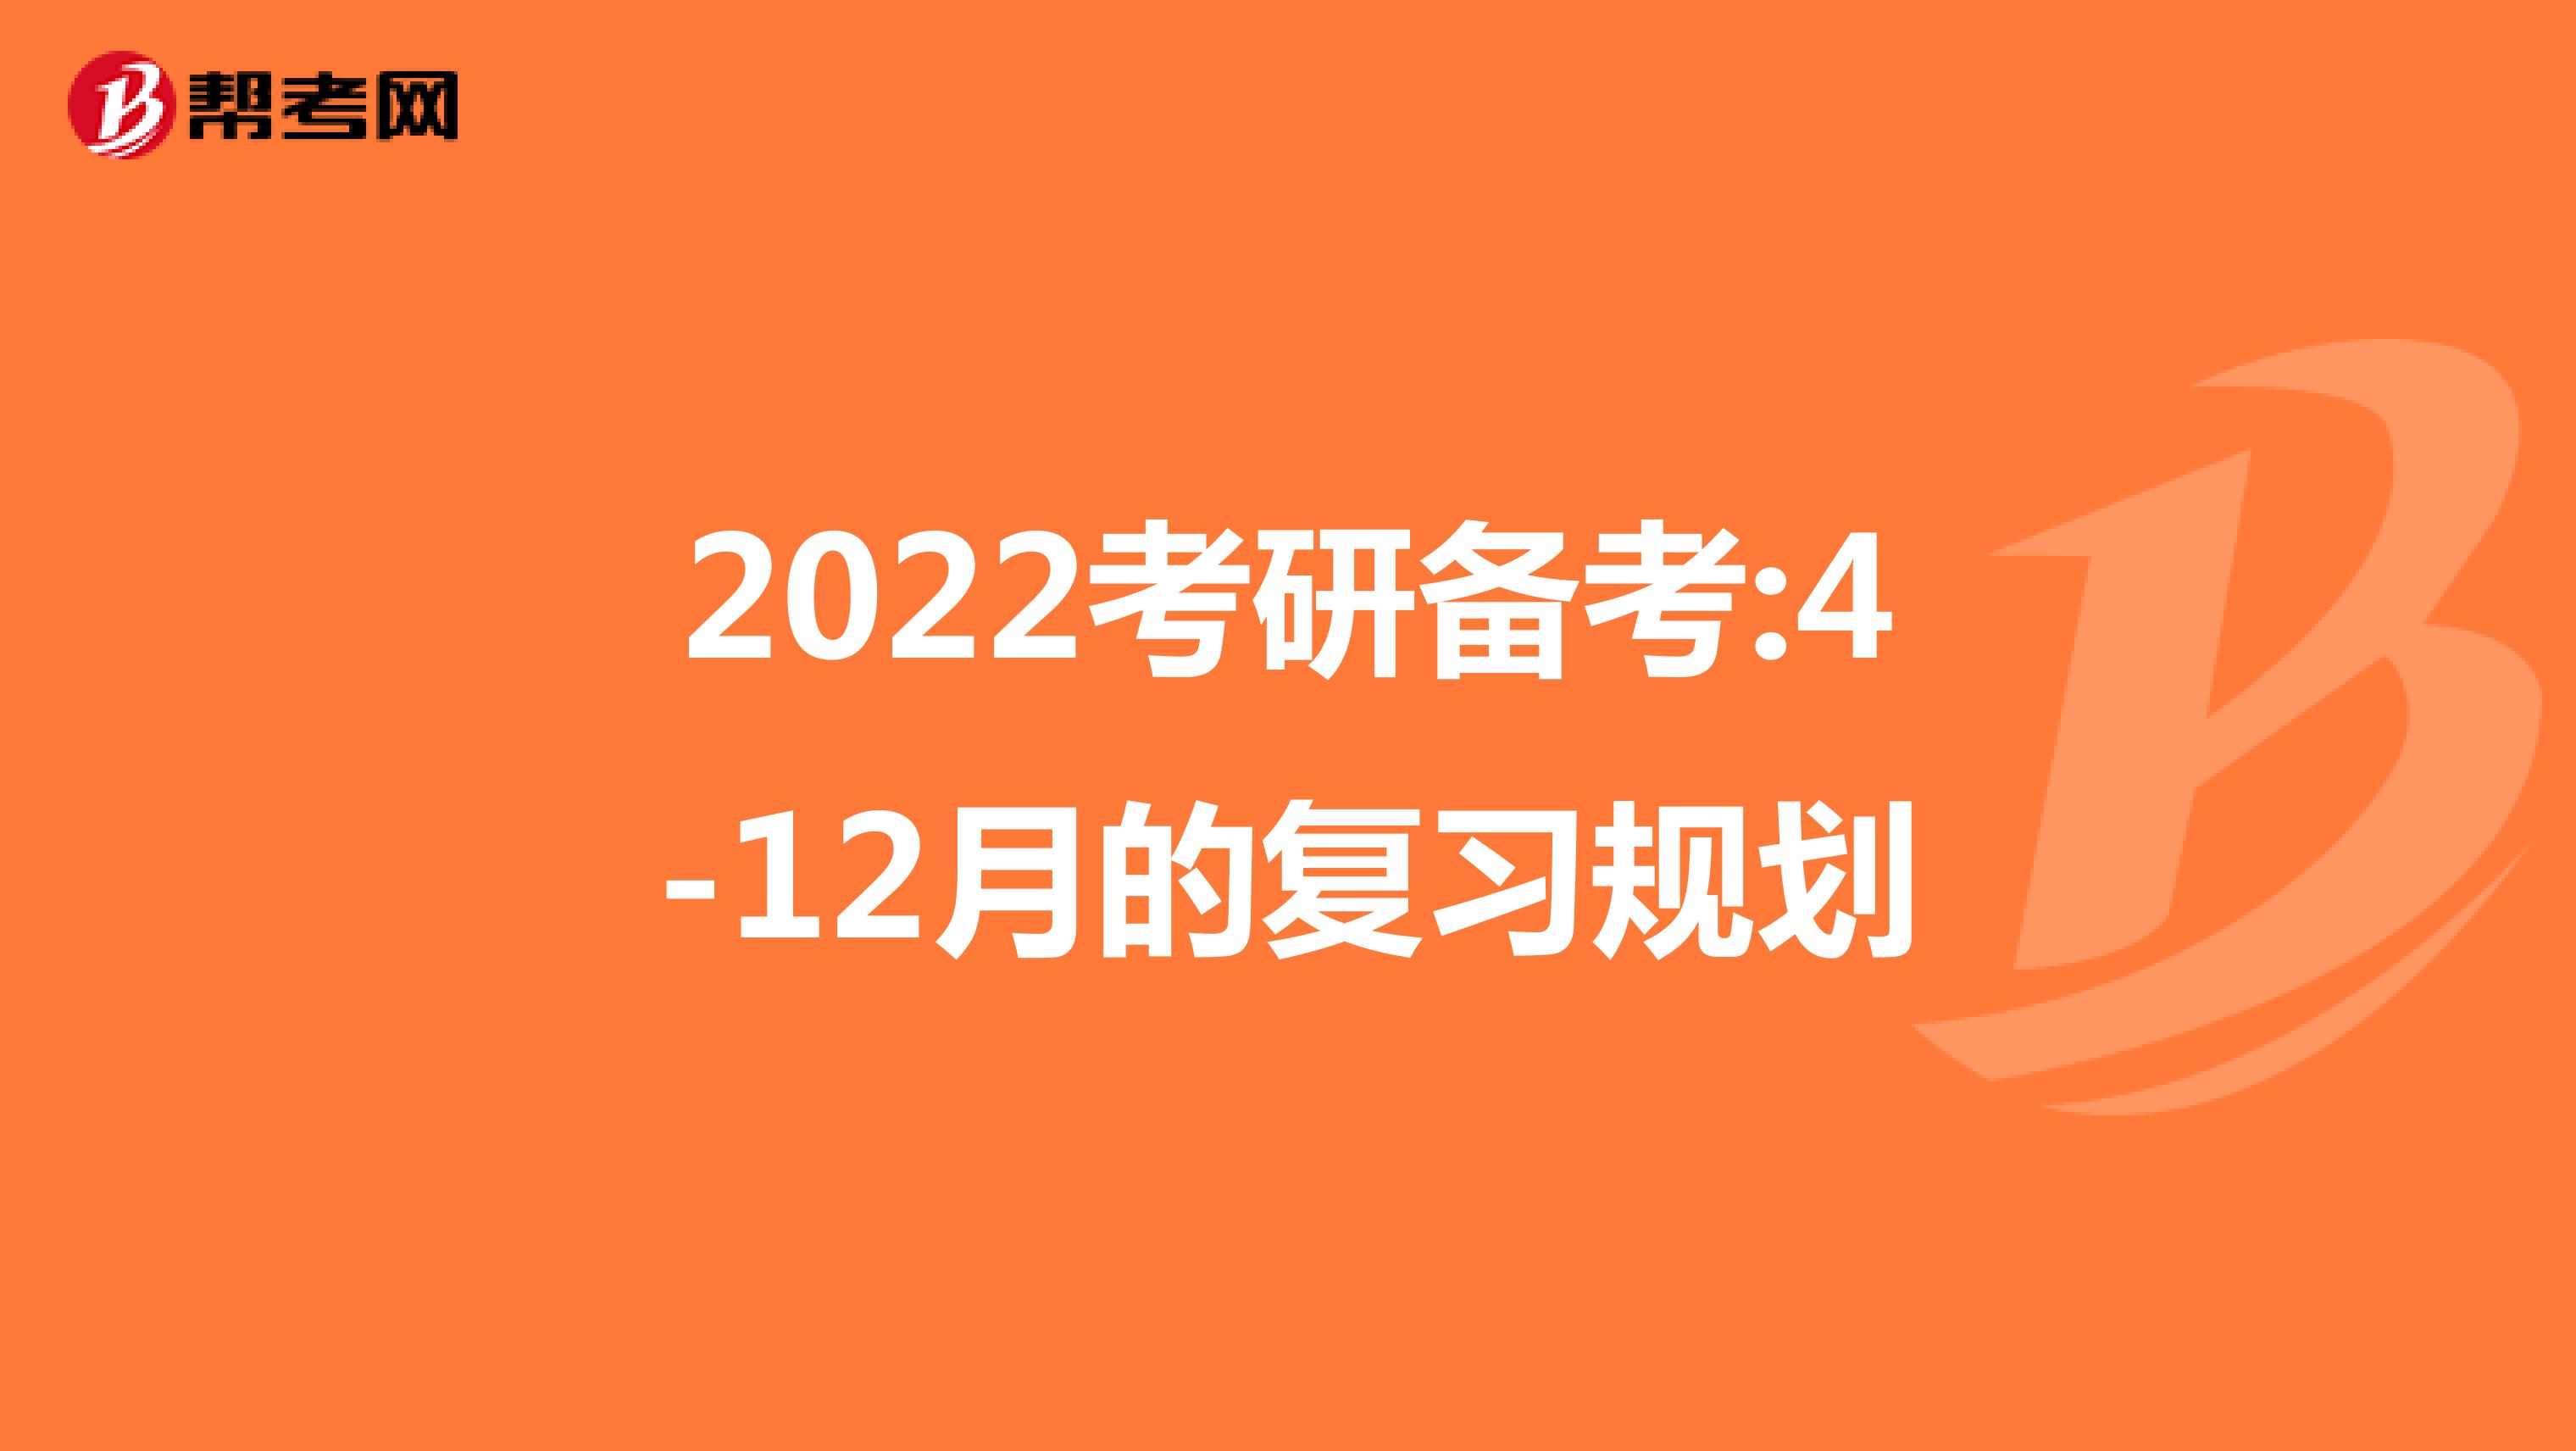 2022考研备考:4-12月的复习规划